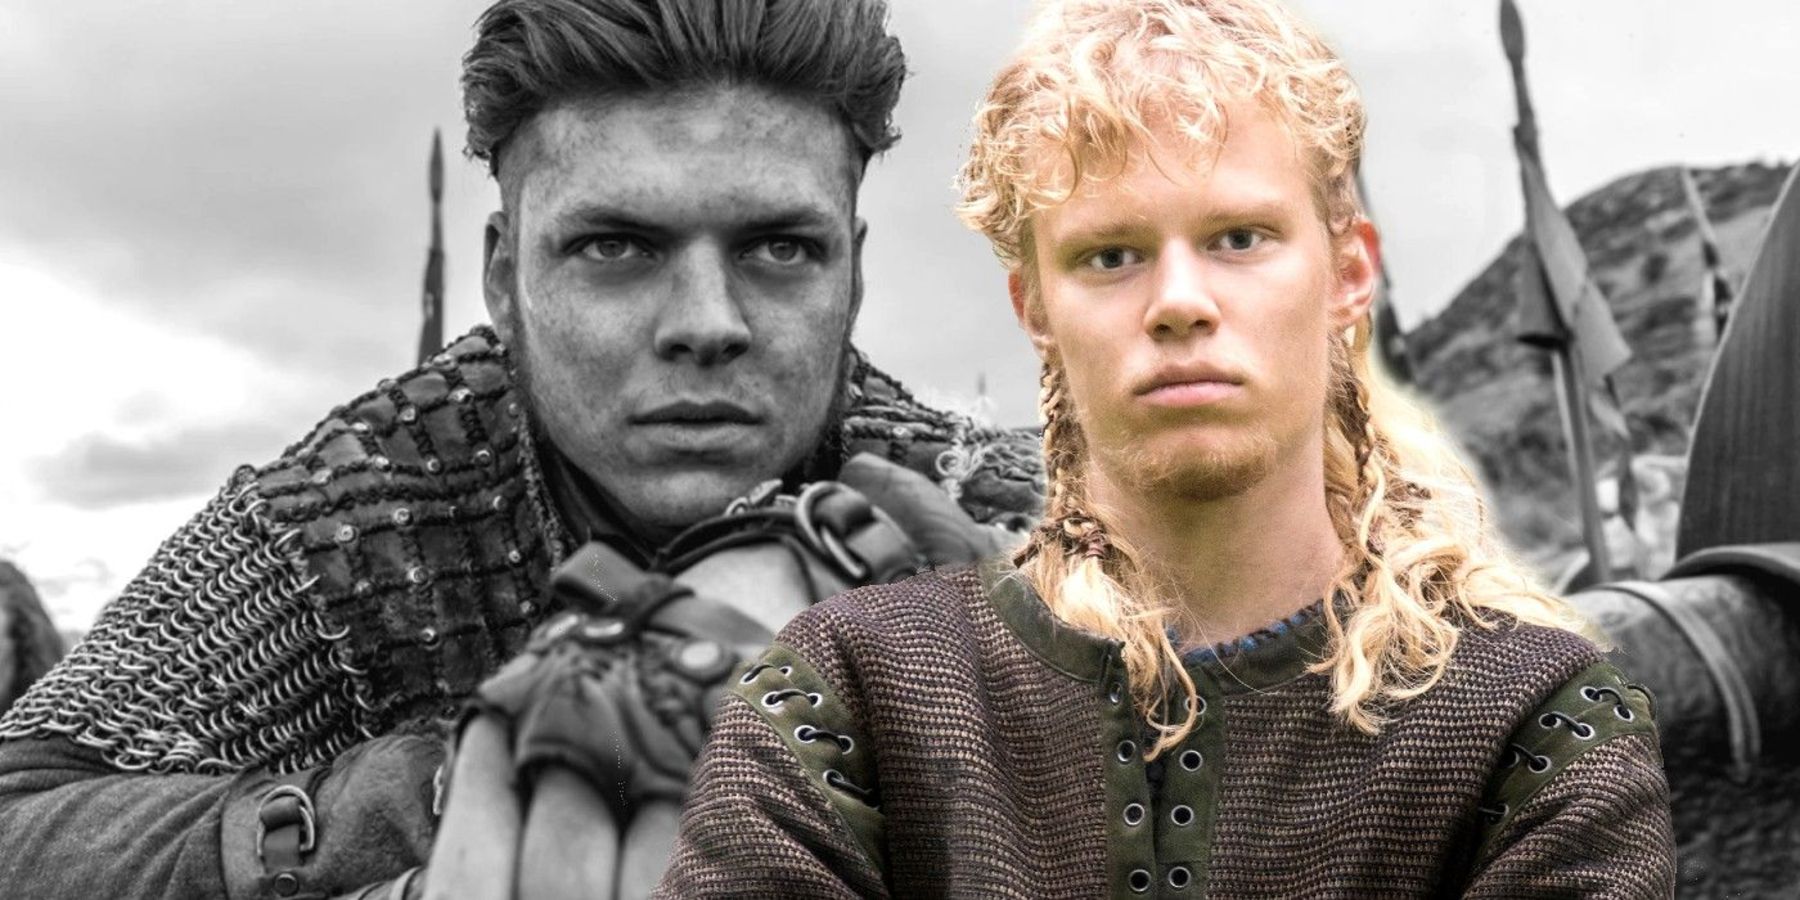 Vikings - Ivar And Sigurd